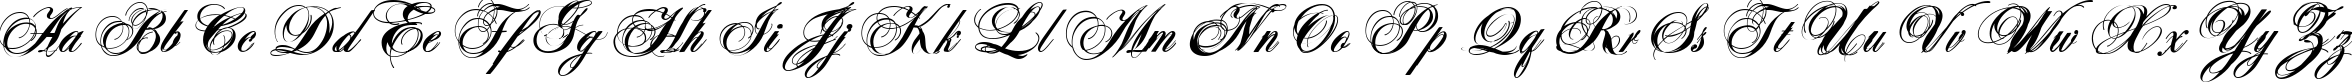 Пример написания английского алфавита шрифтом Antonella script X Bold